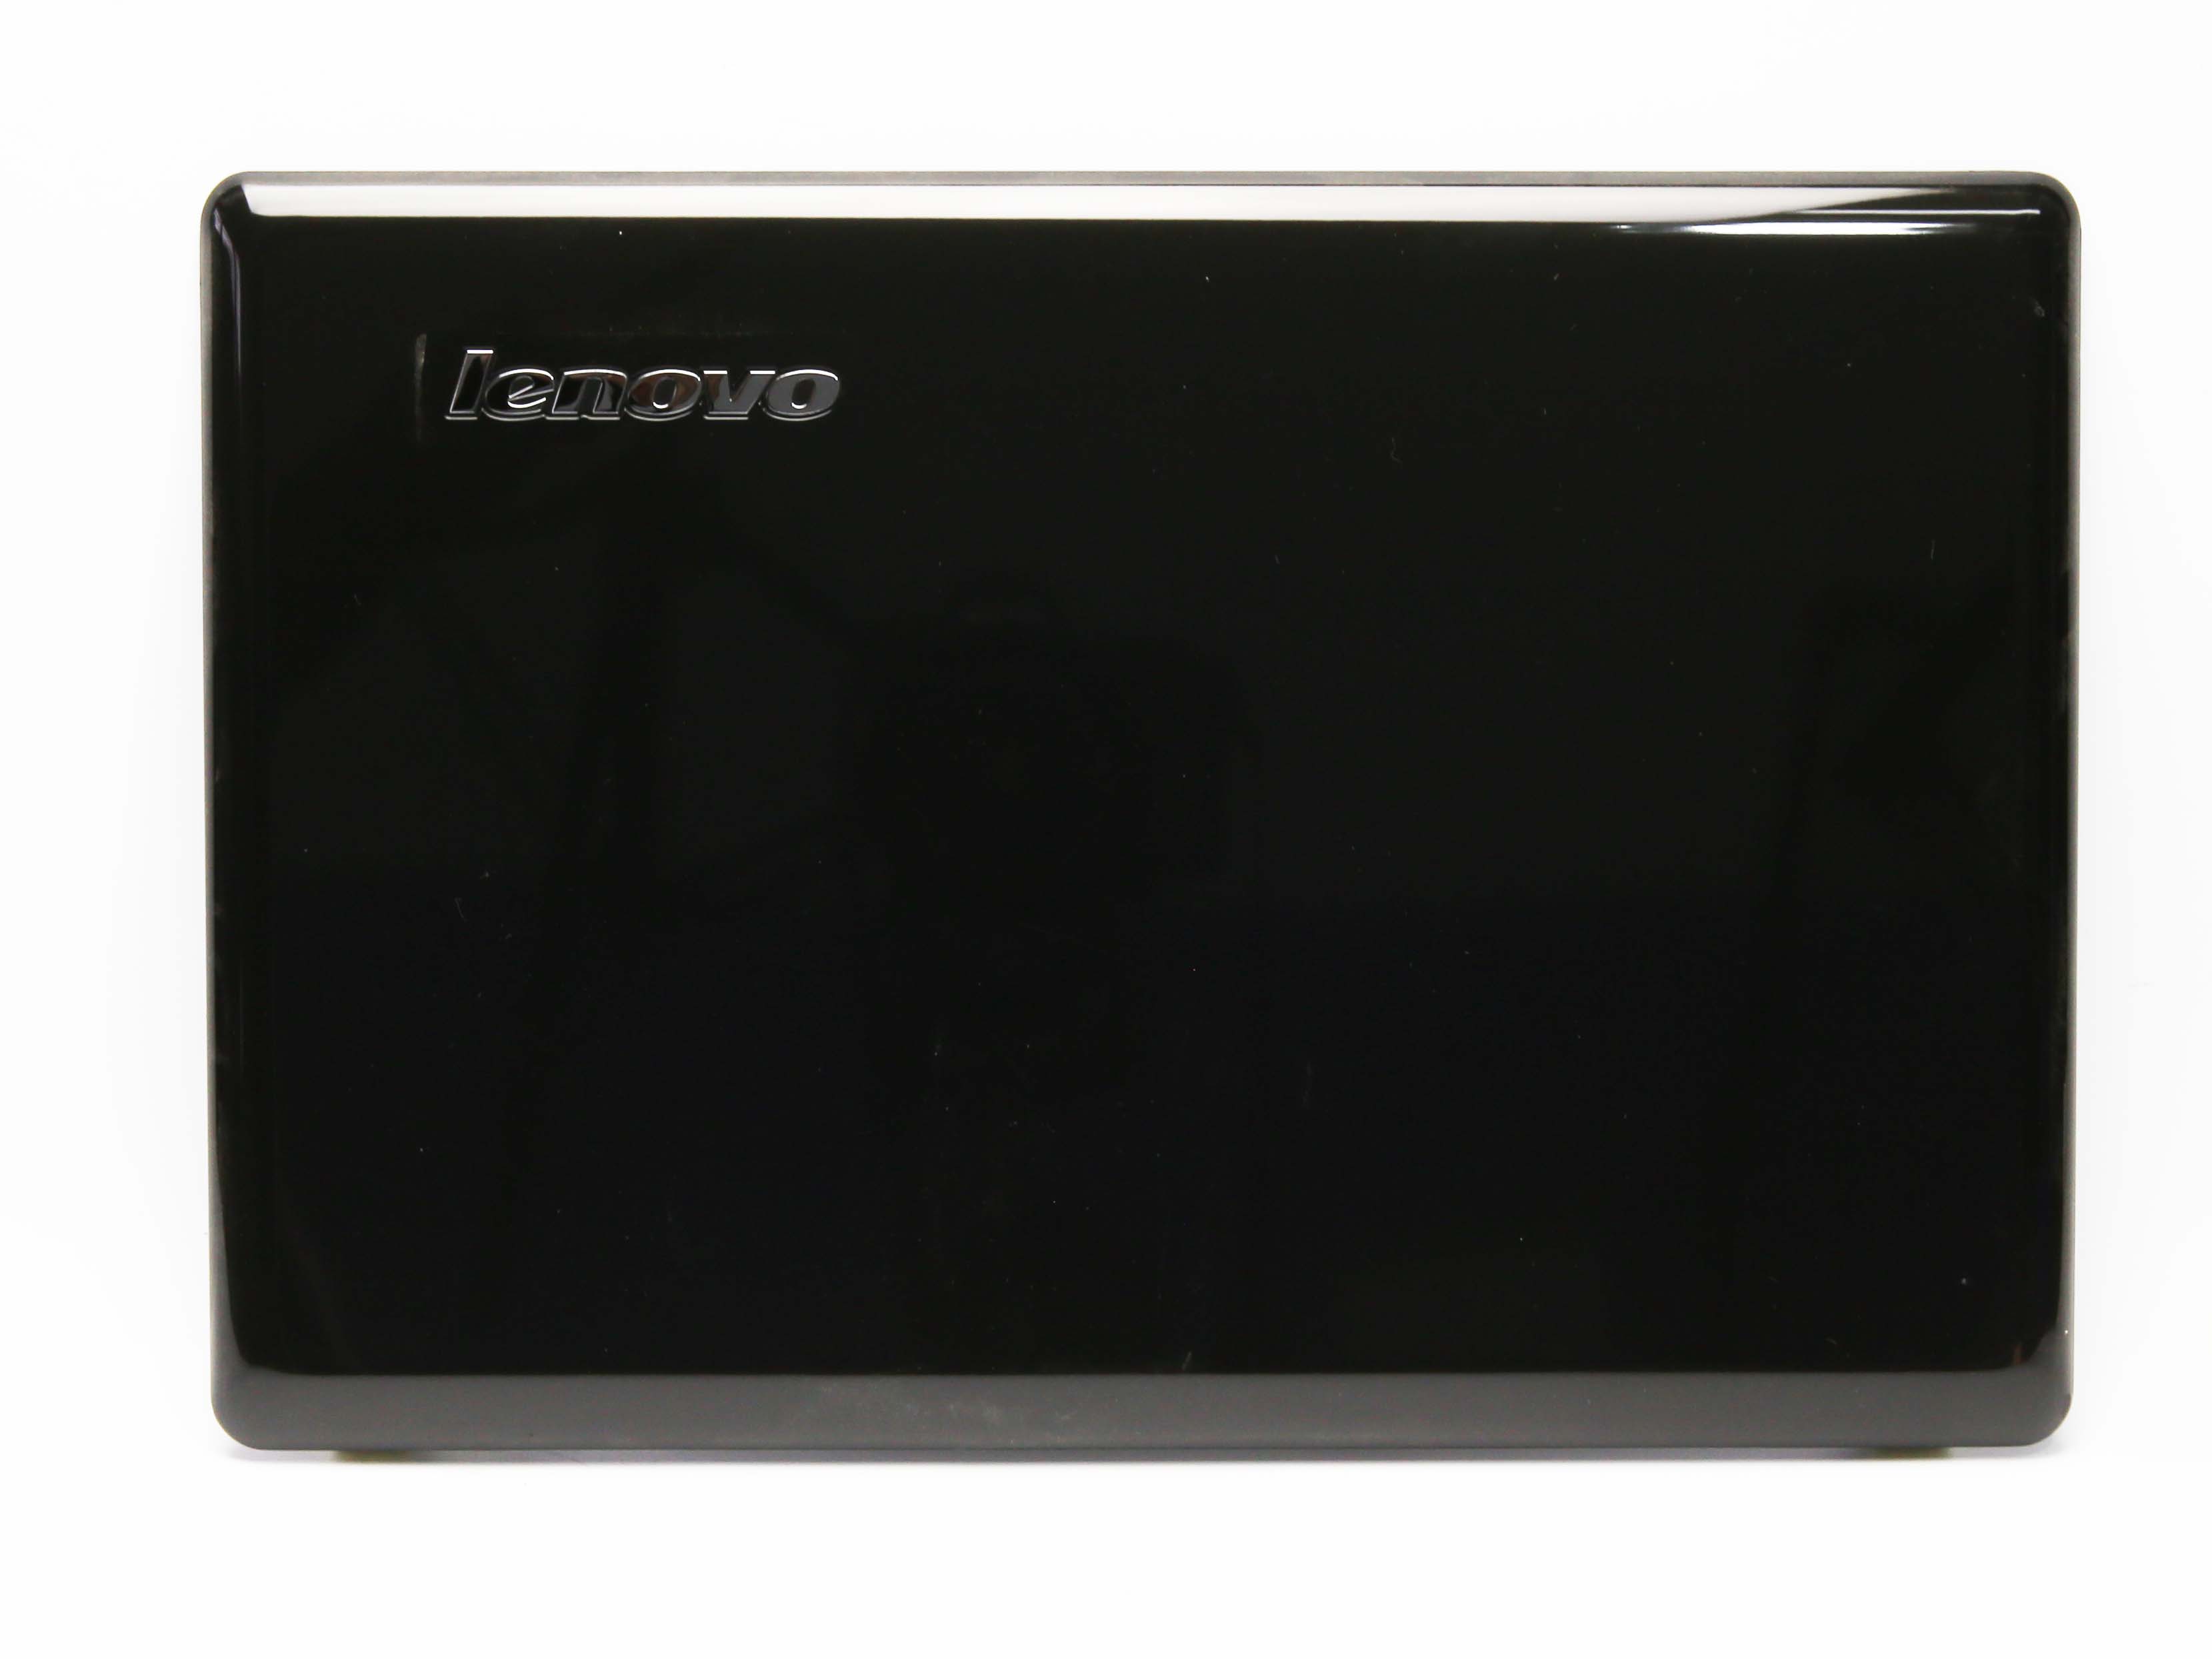 Obudowa AP0E3000601 Lenovo Z460 Display Top Cover